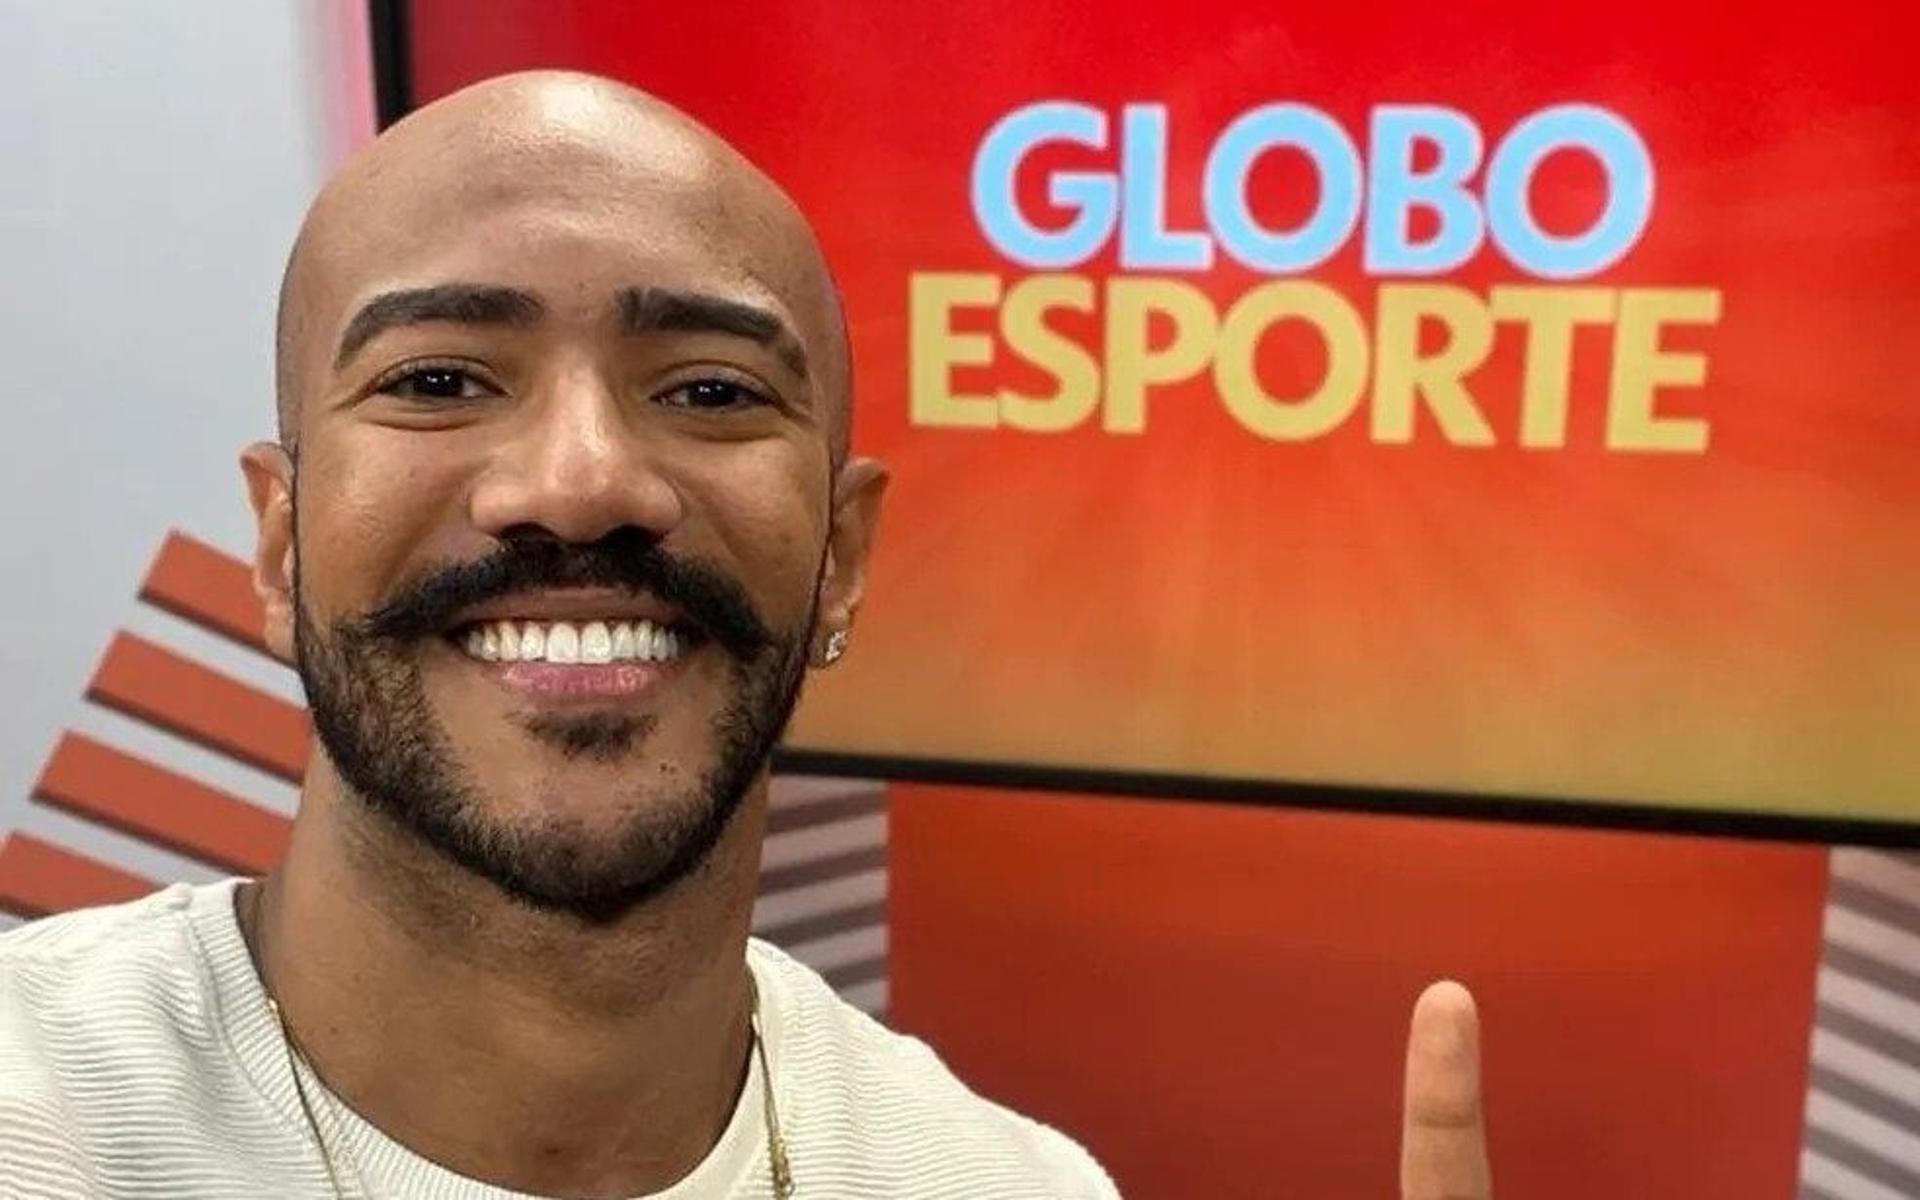 Ricardo-Alface-apresenta-Globo-Esporte-por-um-dia-aspect-ratio-512-320